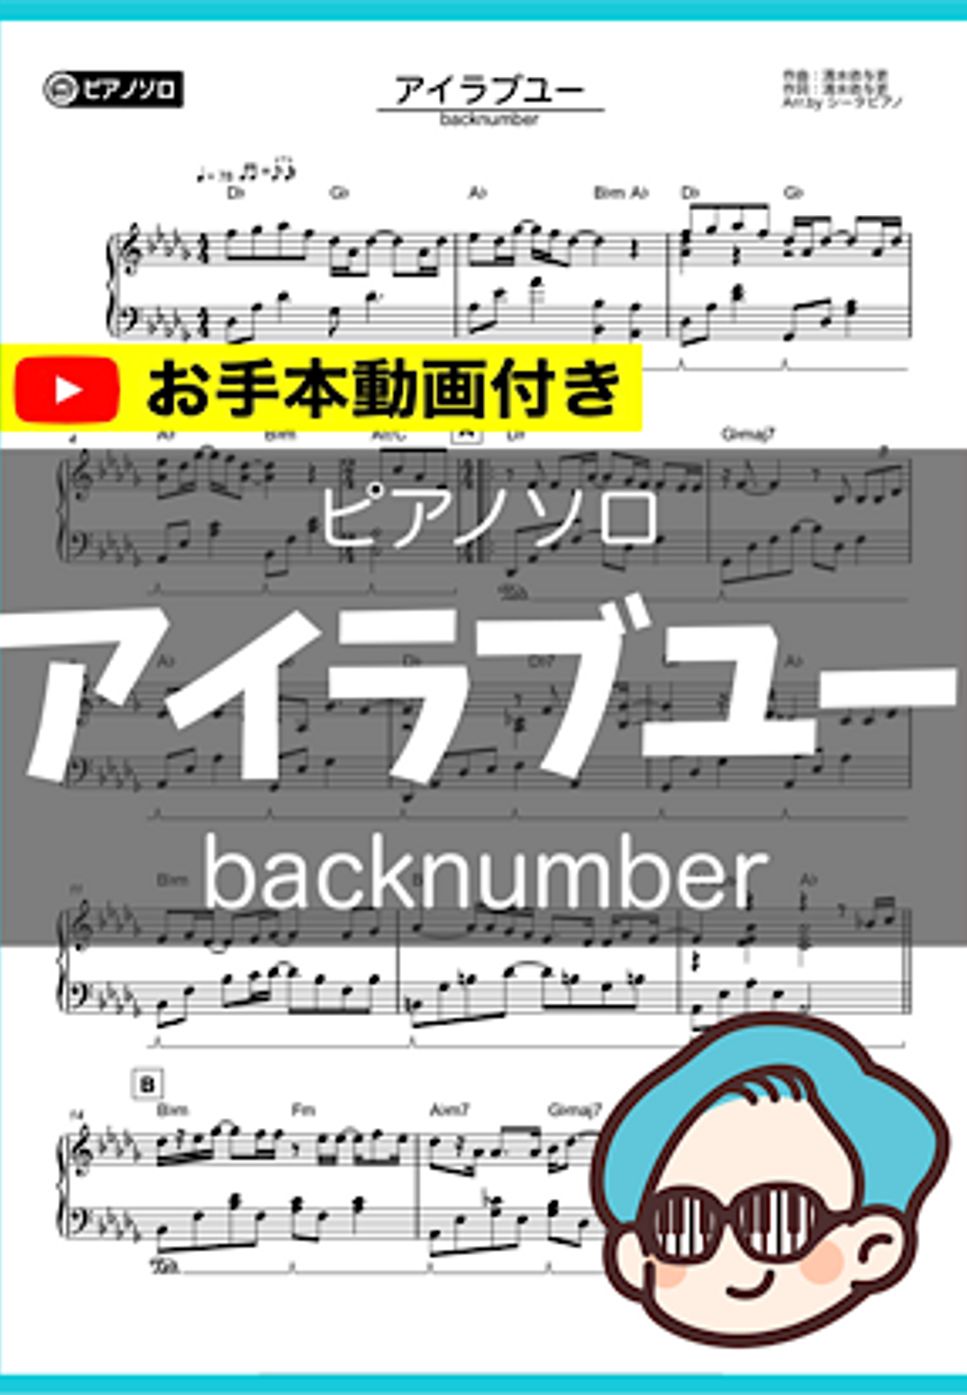 backnumber - アイラブユー by シータピアノ